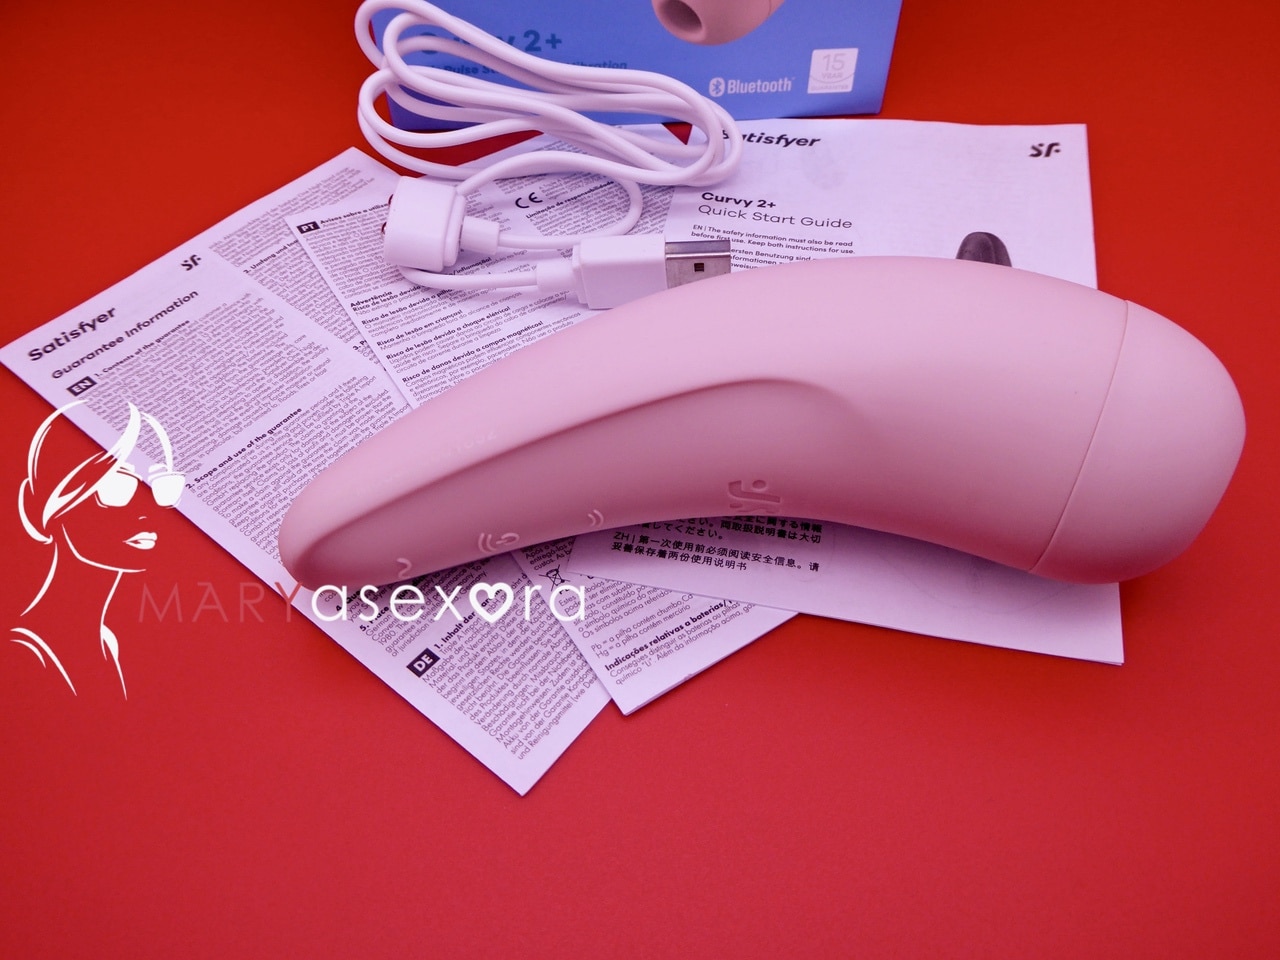 Satisfayer Curvy 2+ color rosa, cargador magnético y tres manuales.